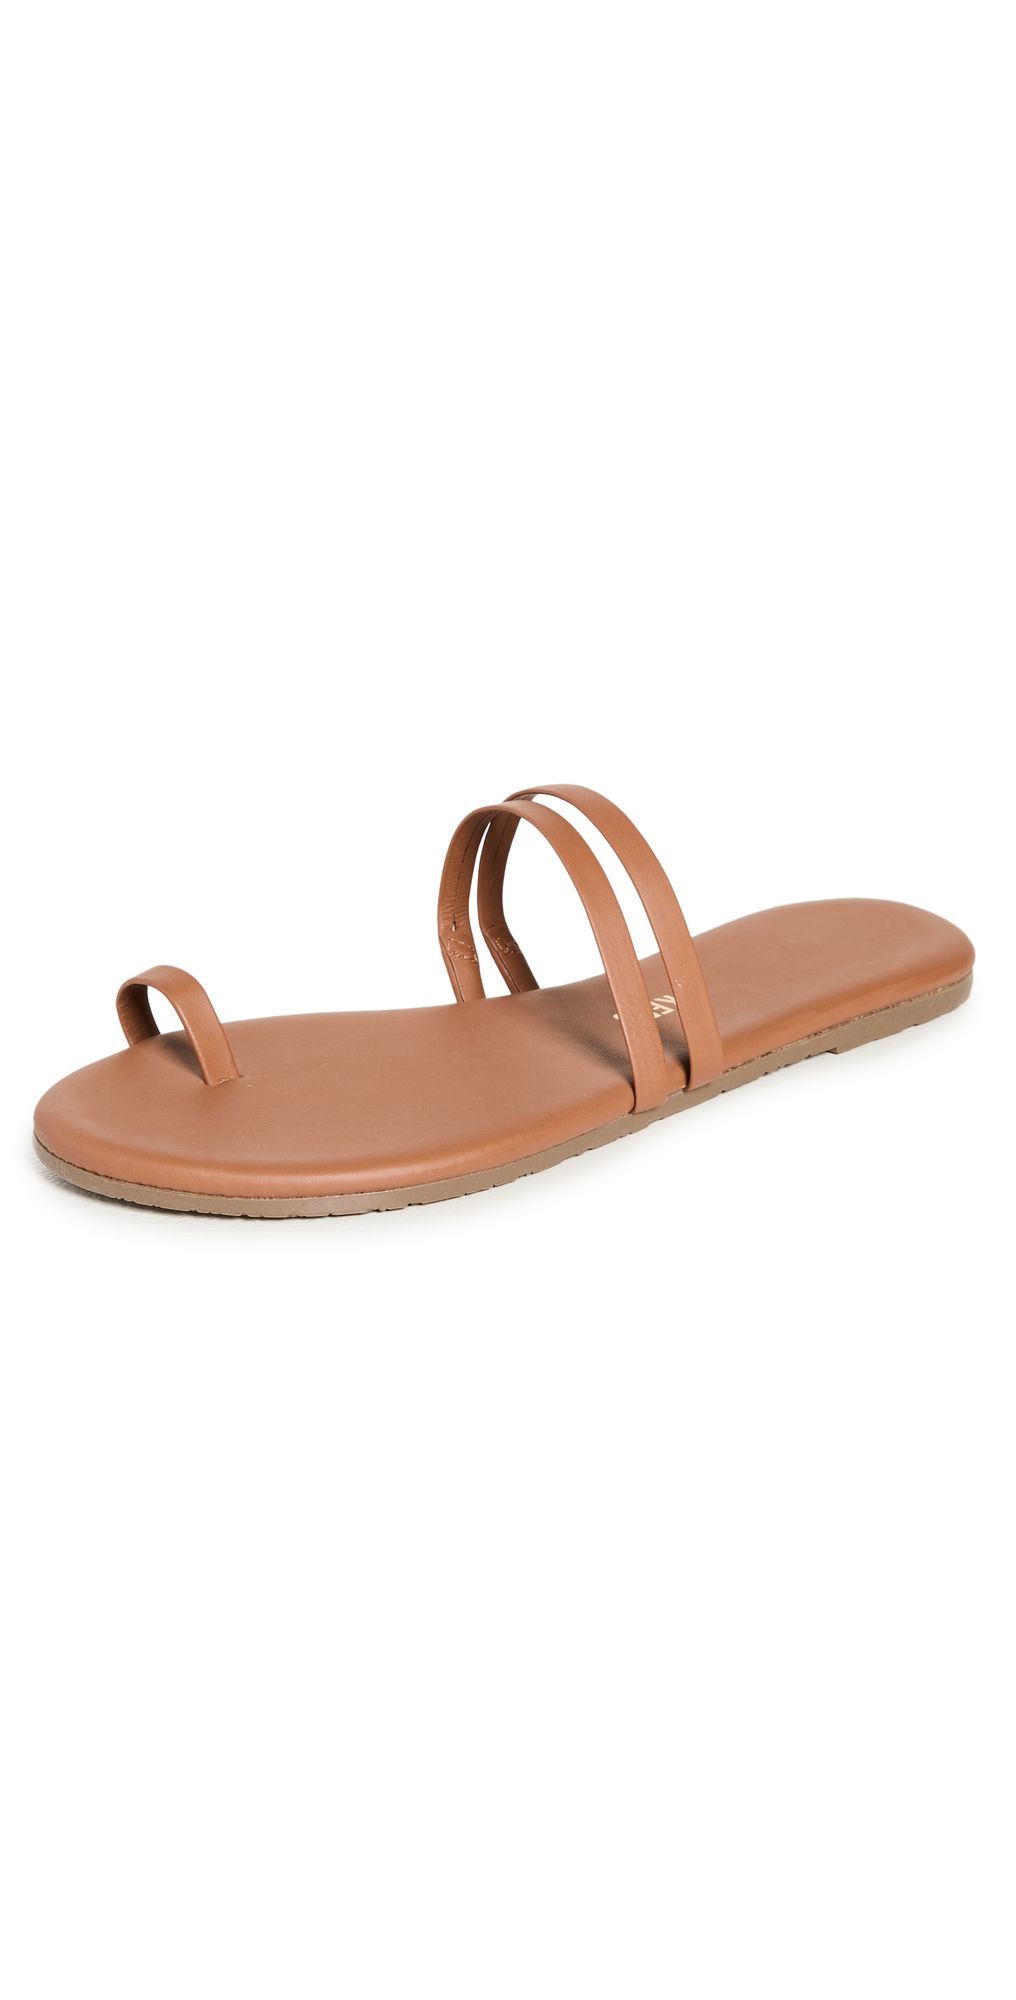 Leah Sandals | Shopbop